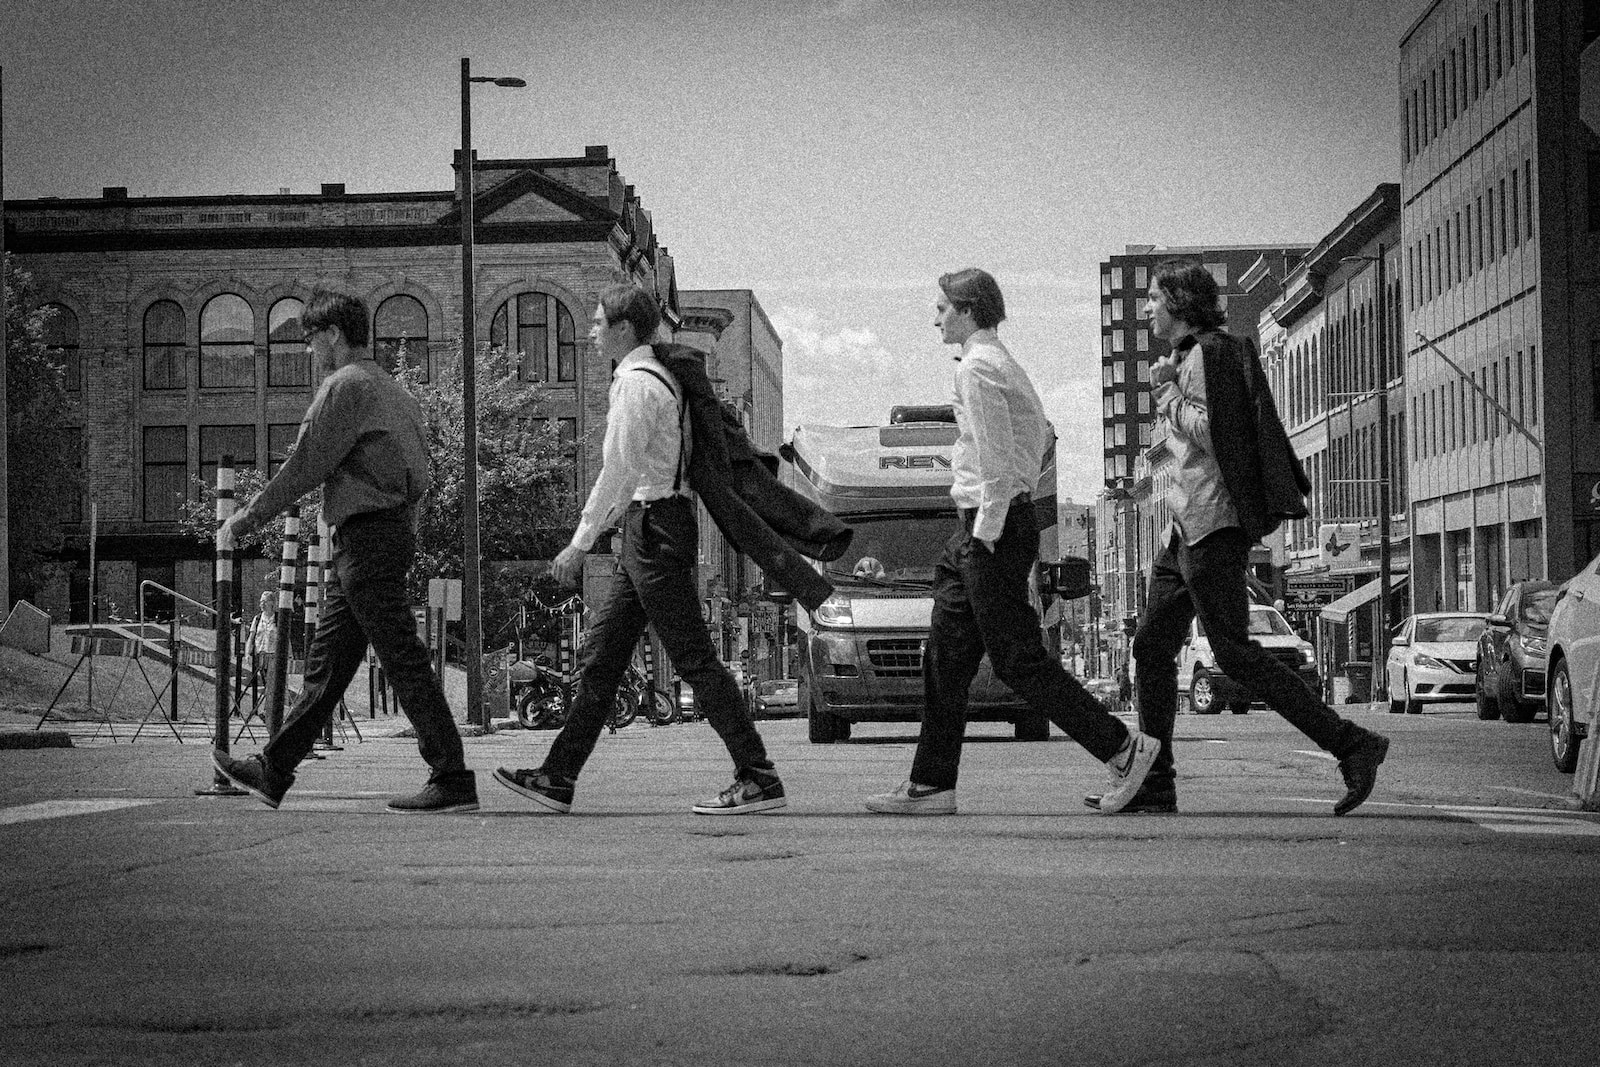 a group of men walking across a street